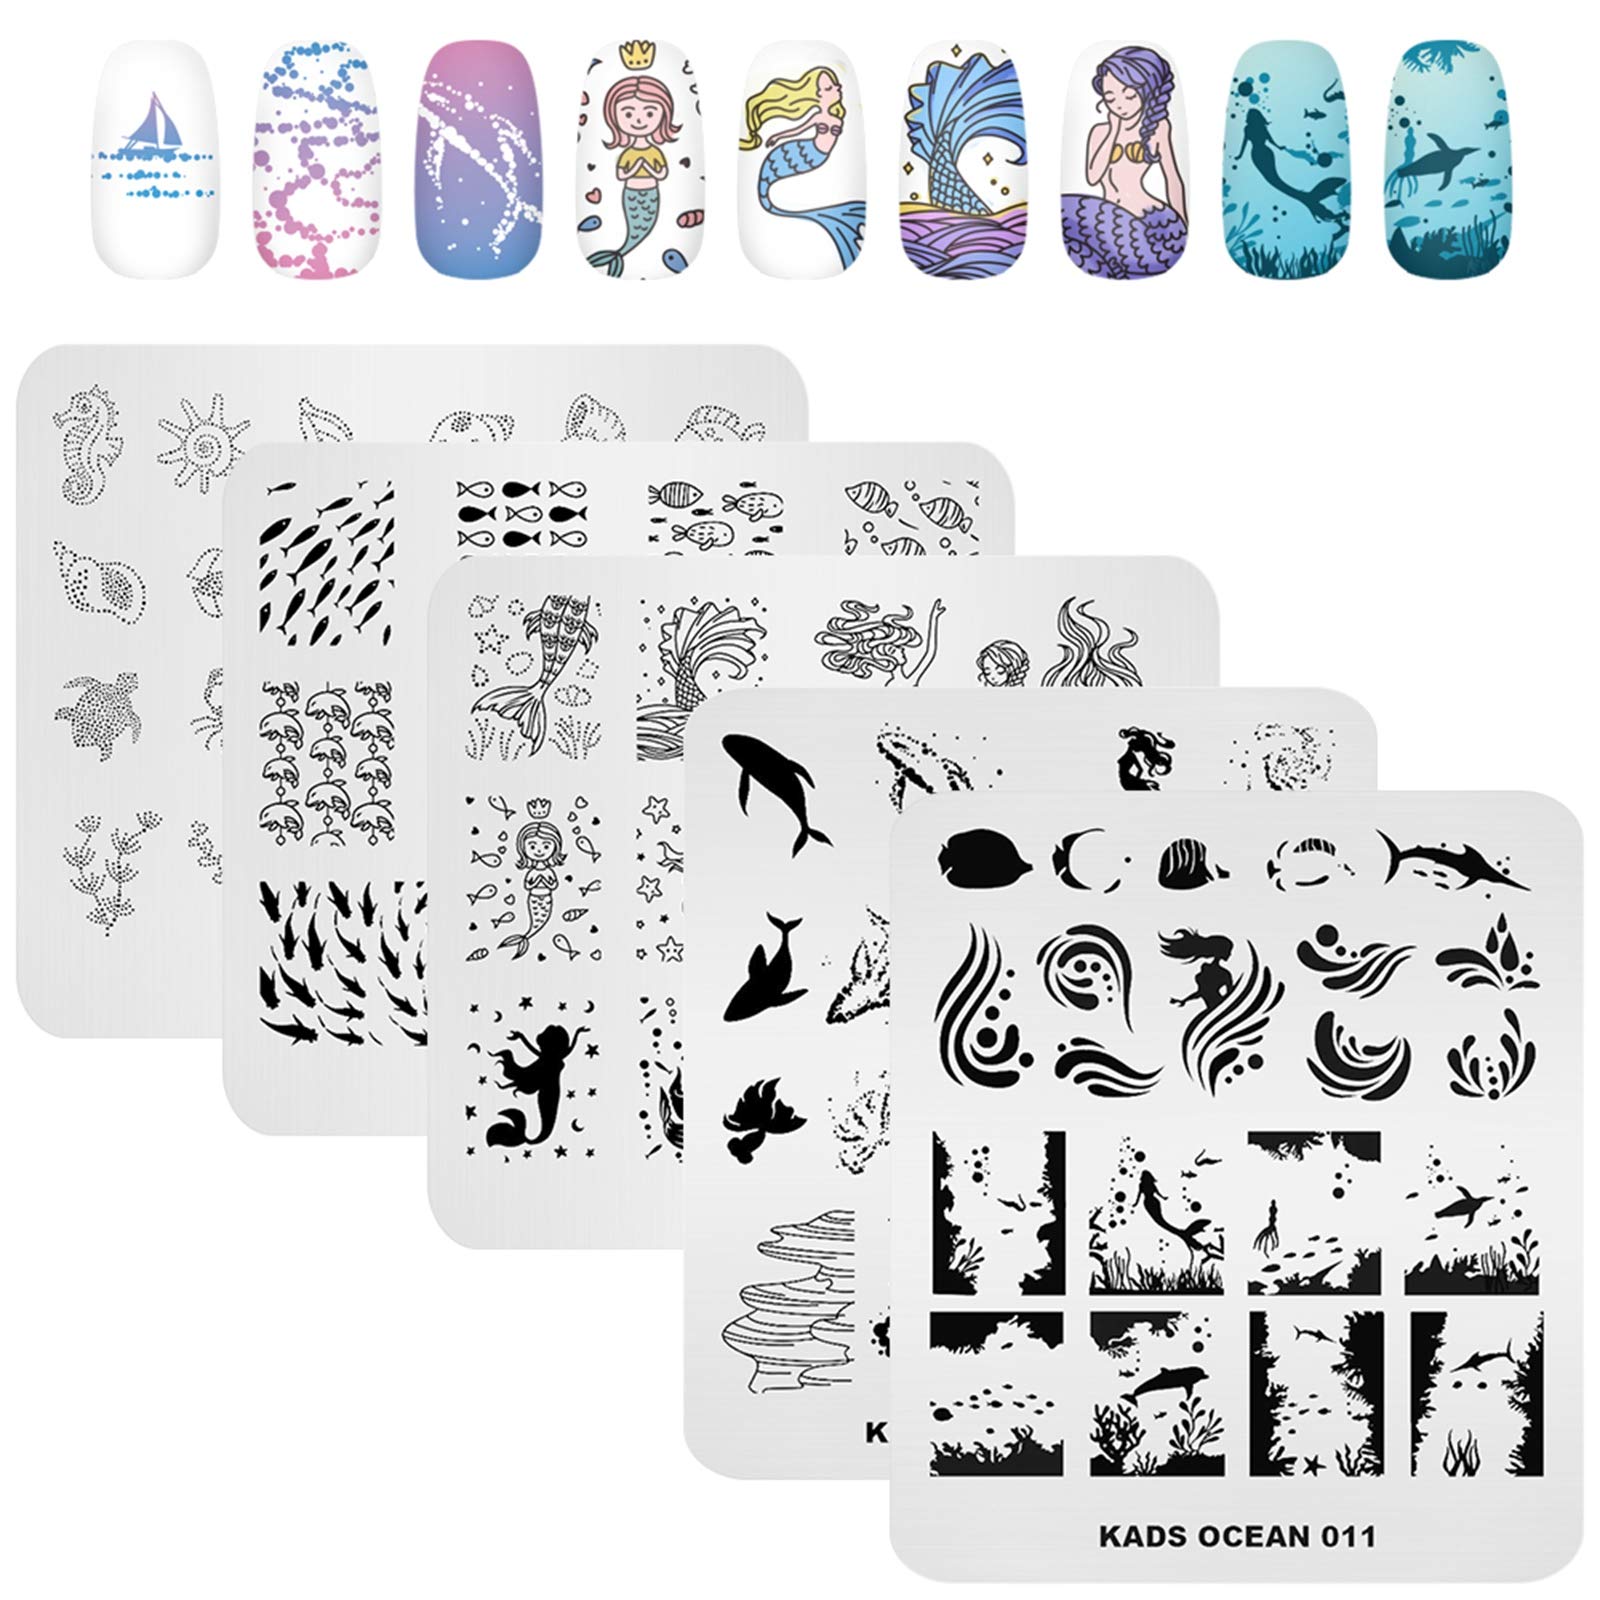 Nail Art Stamping Set 5pcs Premium Etched Stamping Plates Image